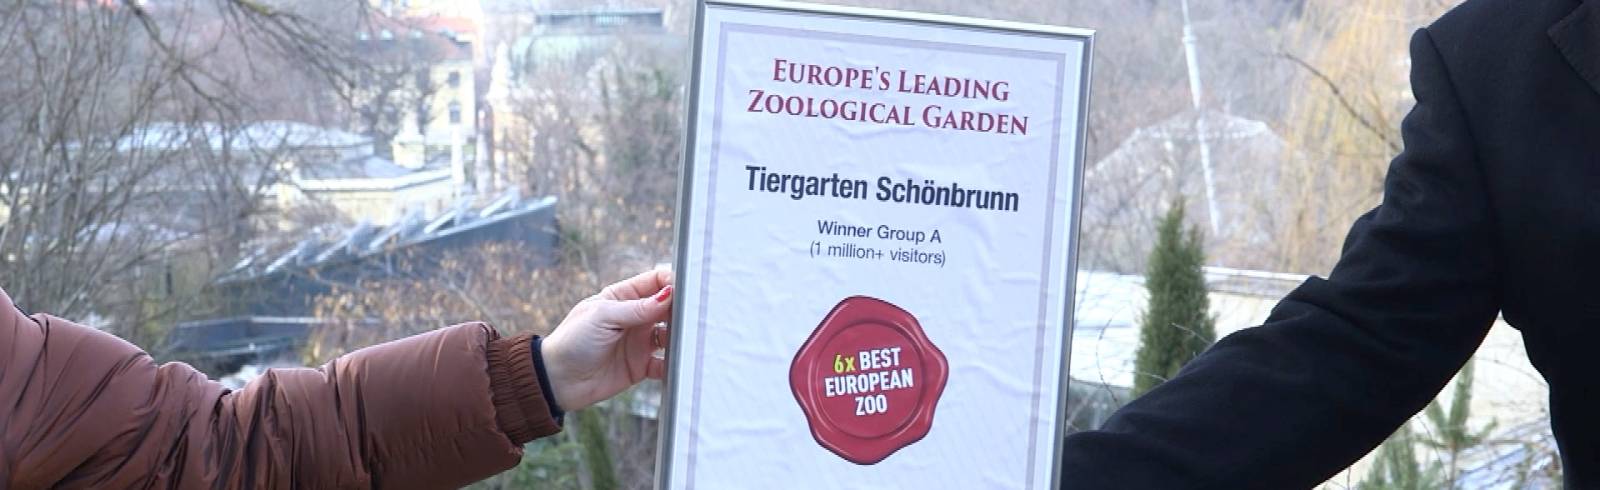 Bezirksflash: Auszeichnung für Tiergarten